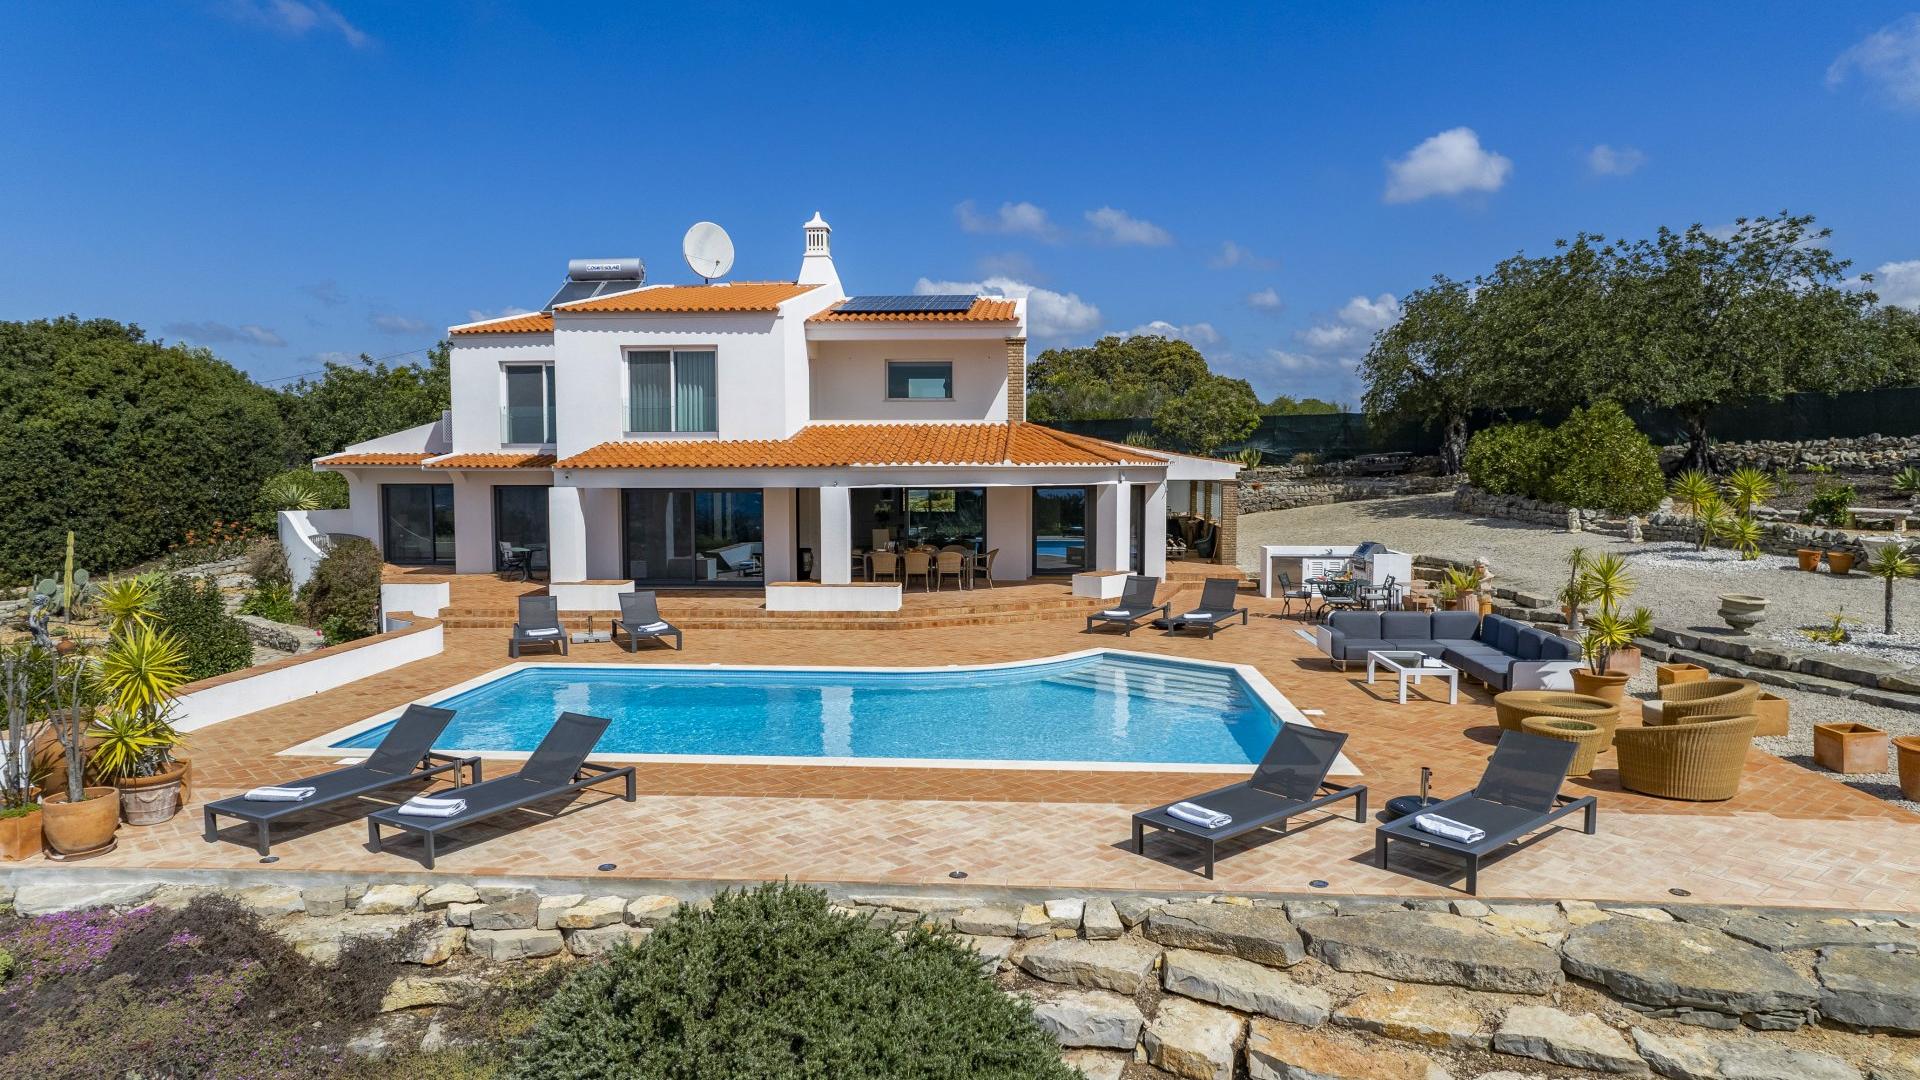 Casa Branca - Santa Barbara de Nexe, Algarve - DJI_0985.jpg